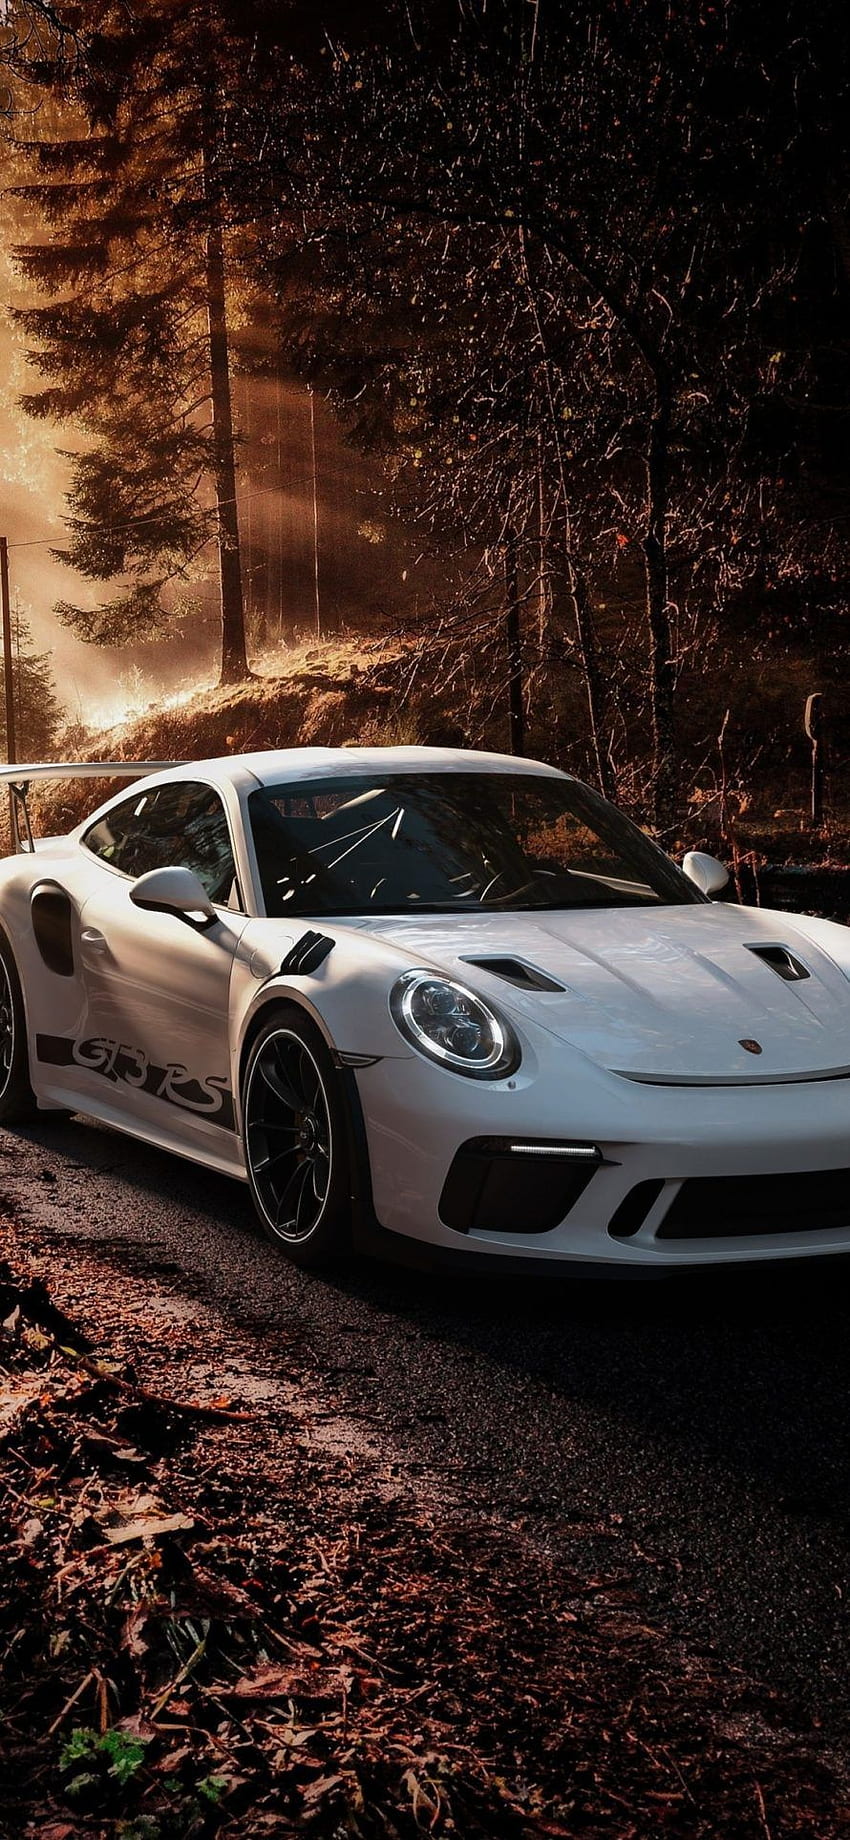 Porsche 911 iPhone - Porsche 911 Gt3 Rs iPhone - HD phone wallpaper